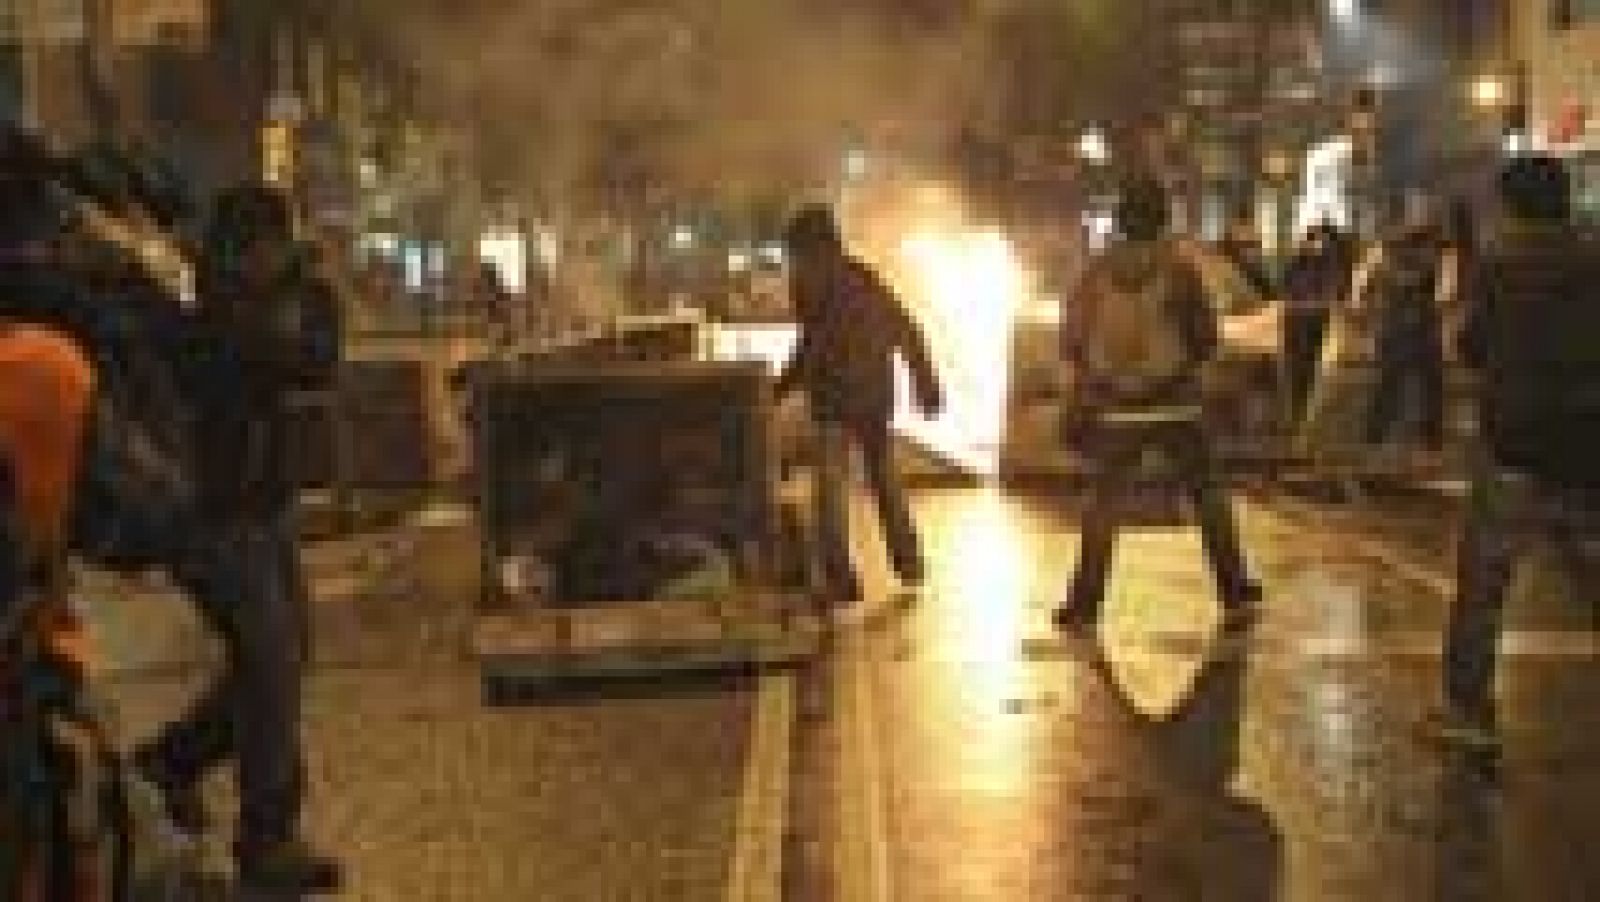 30 detenidos en la noche más violenta en el barrio de Sants 